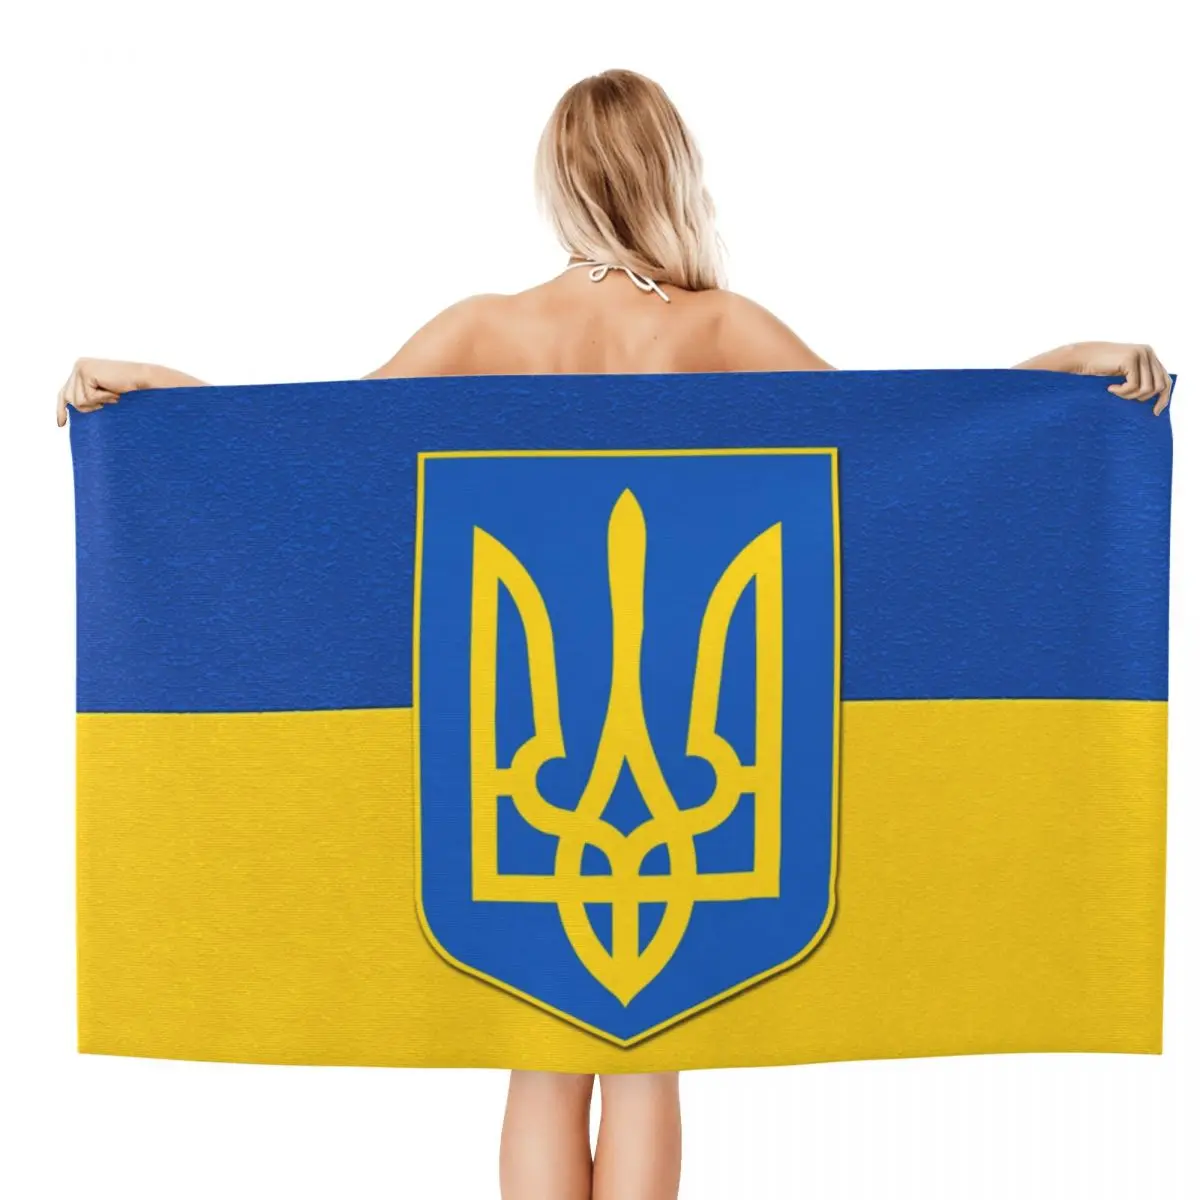 

Пляжное полотенце с флагом Украины и гербом Украины, быстросохнущие украинские патриотические Супермягкие банные полотенца из микрофибры для сауны